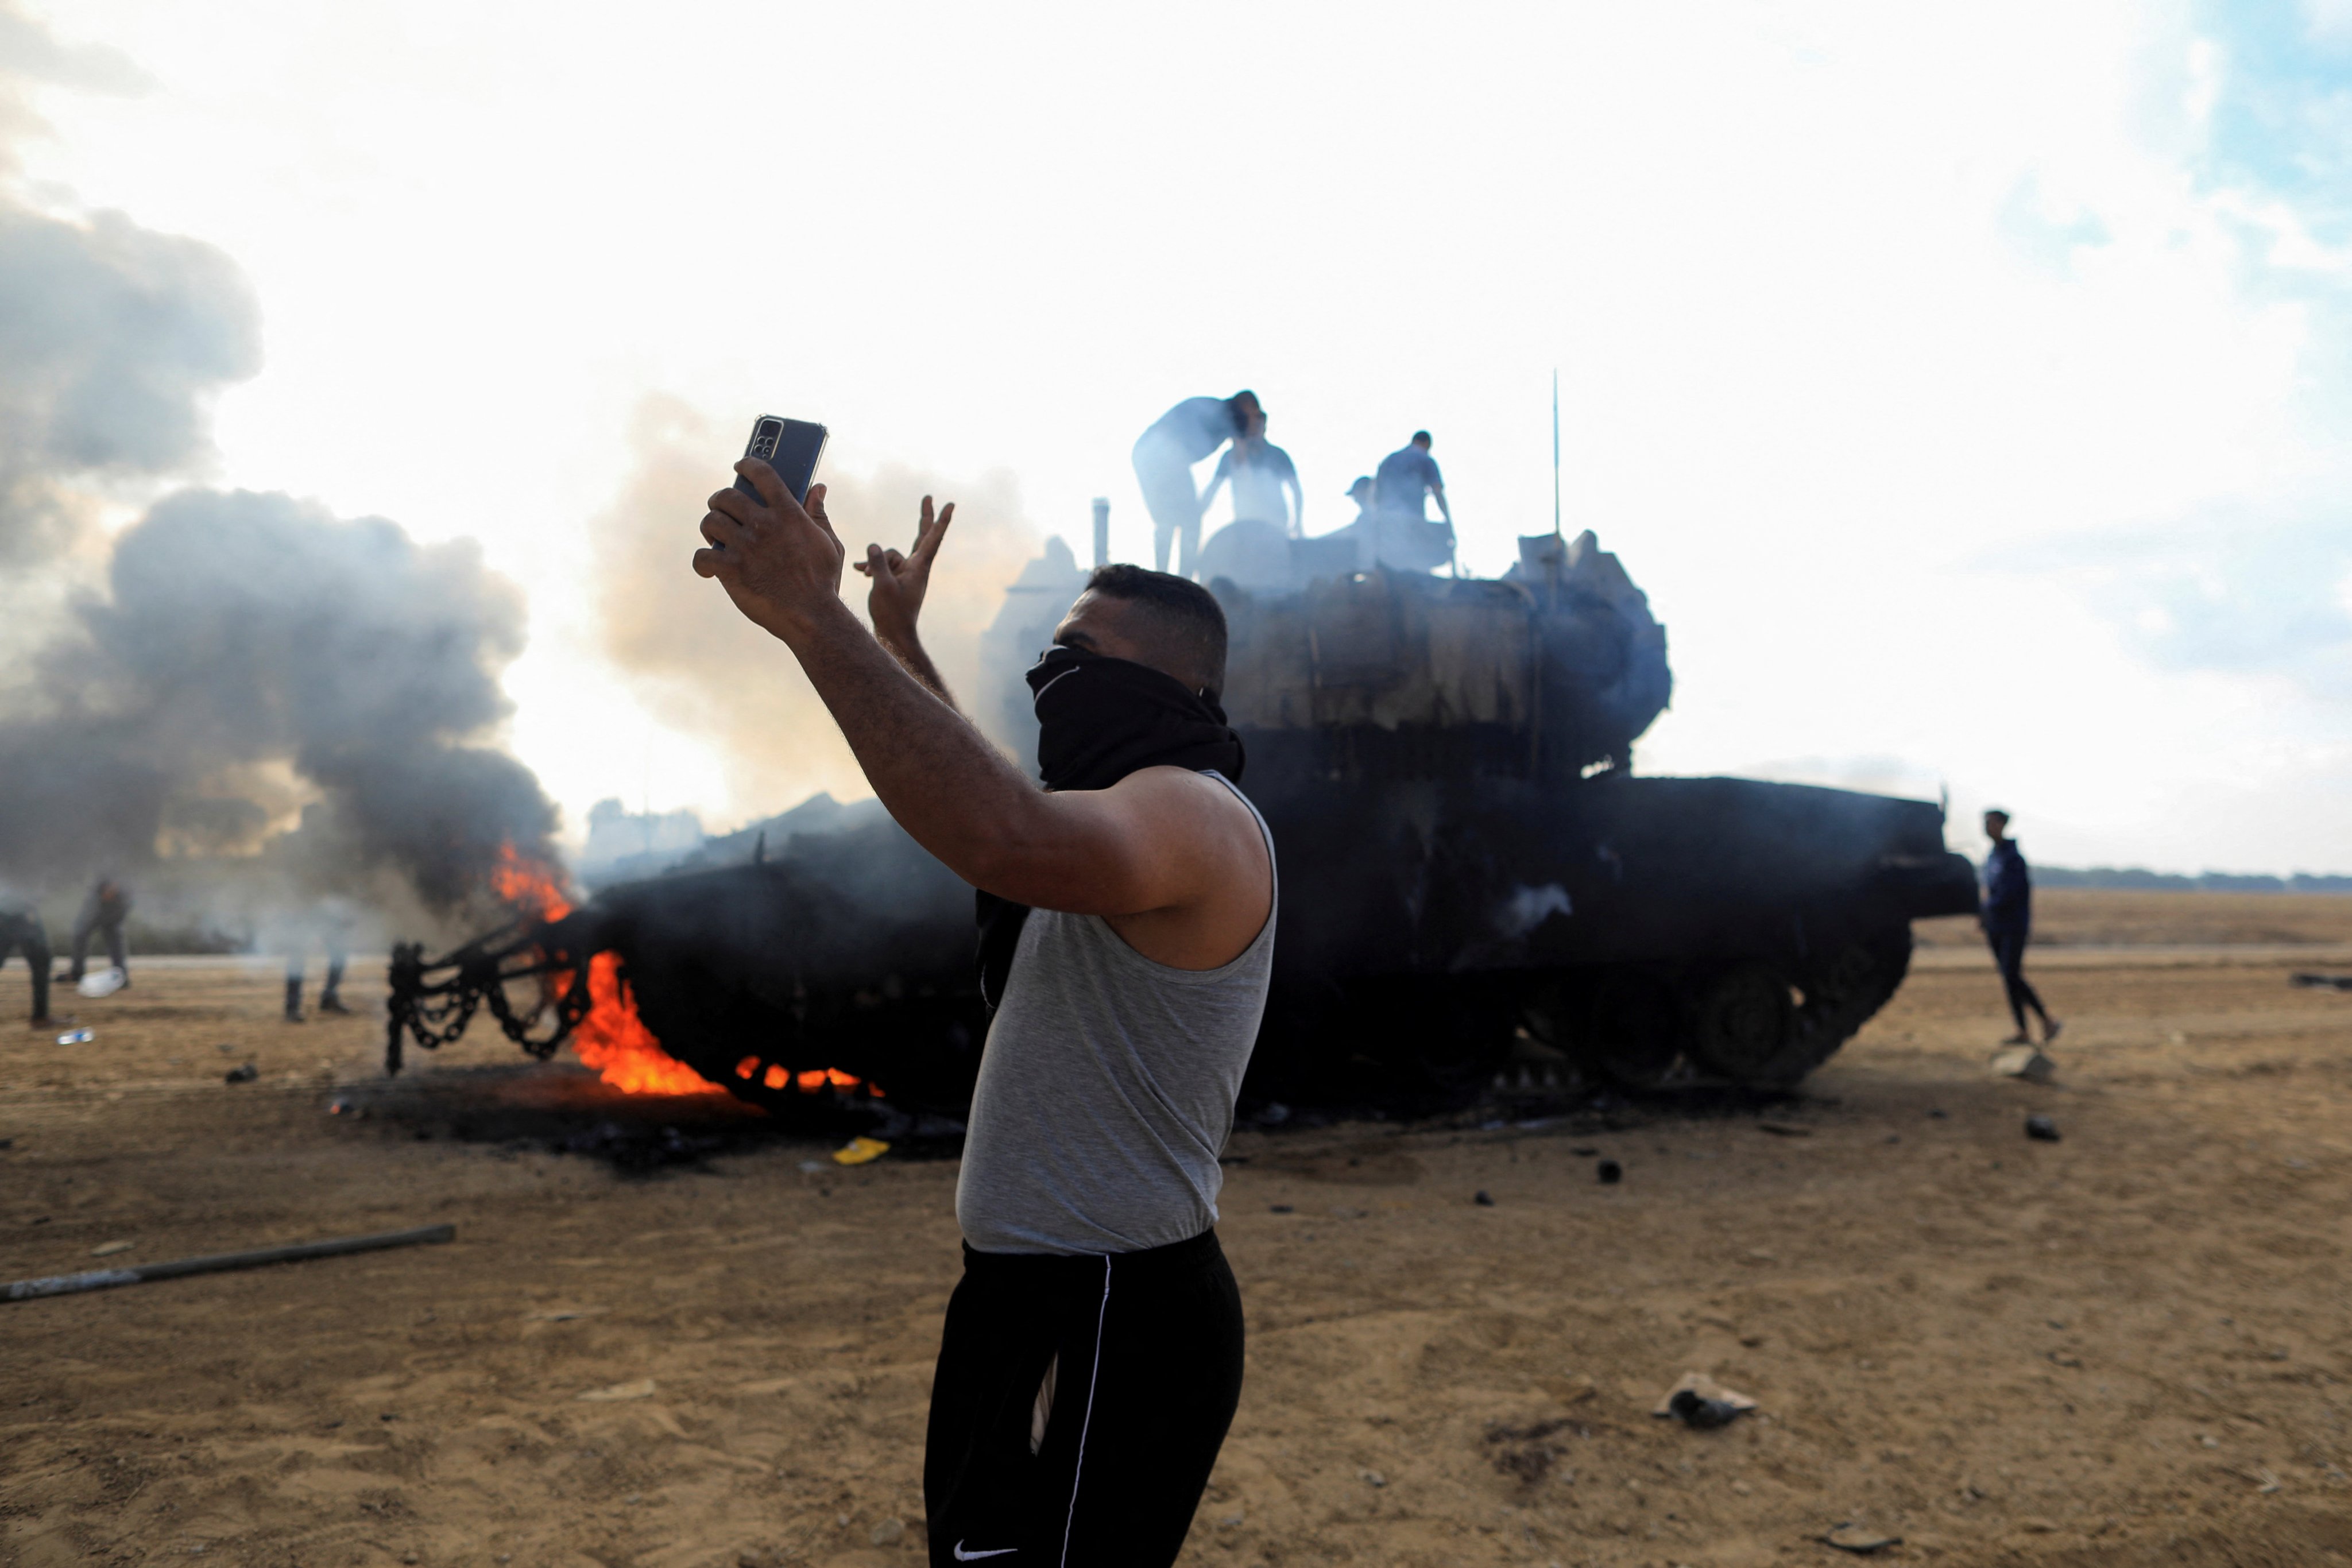 Raste broj žrtava na obje strane: Izrael zvanično proglasio ratno stanje